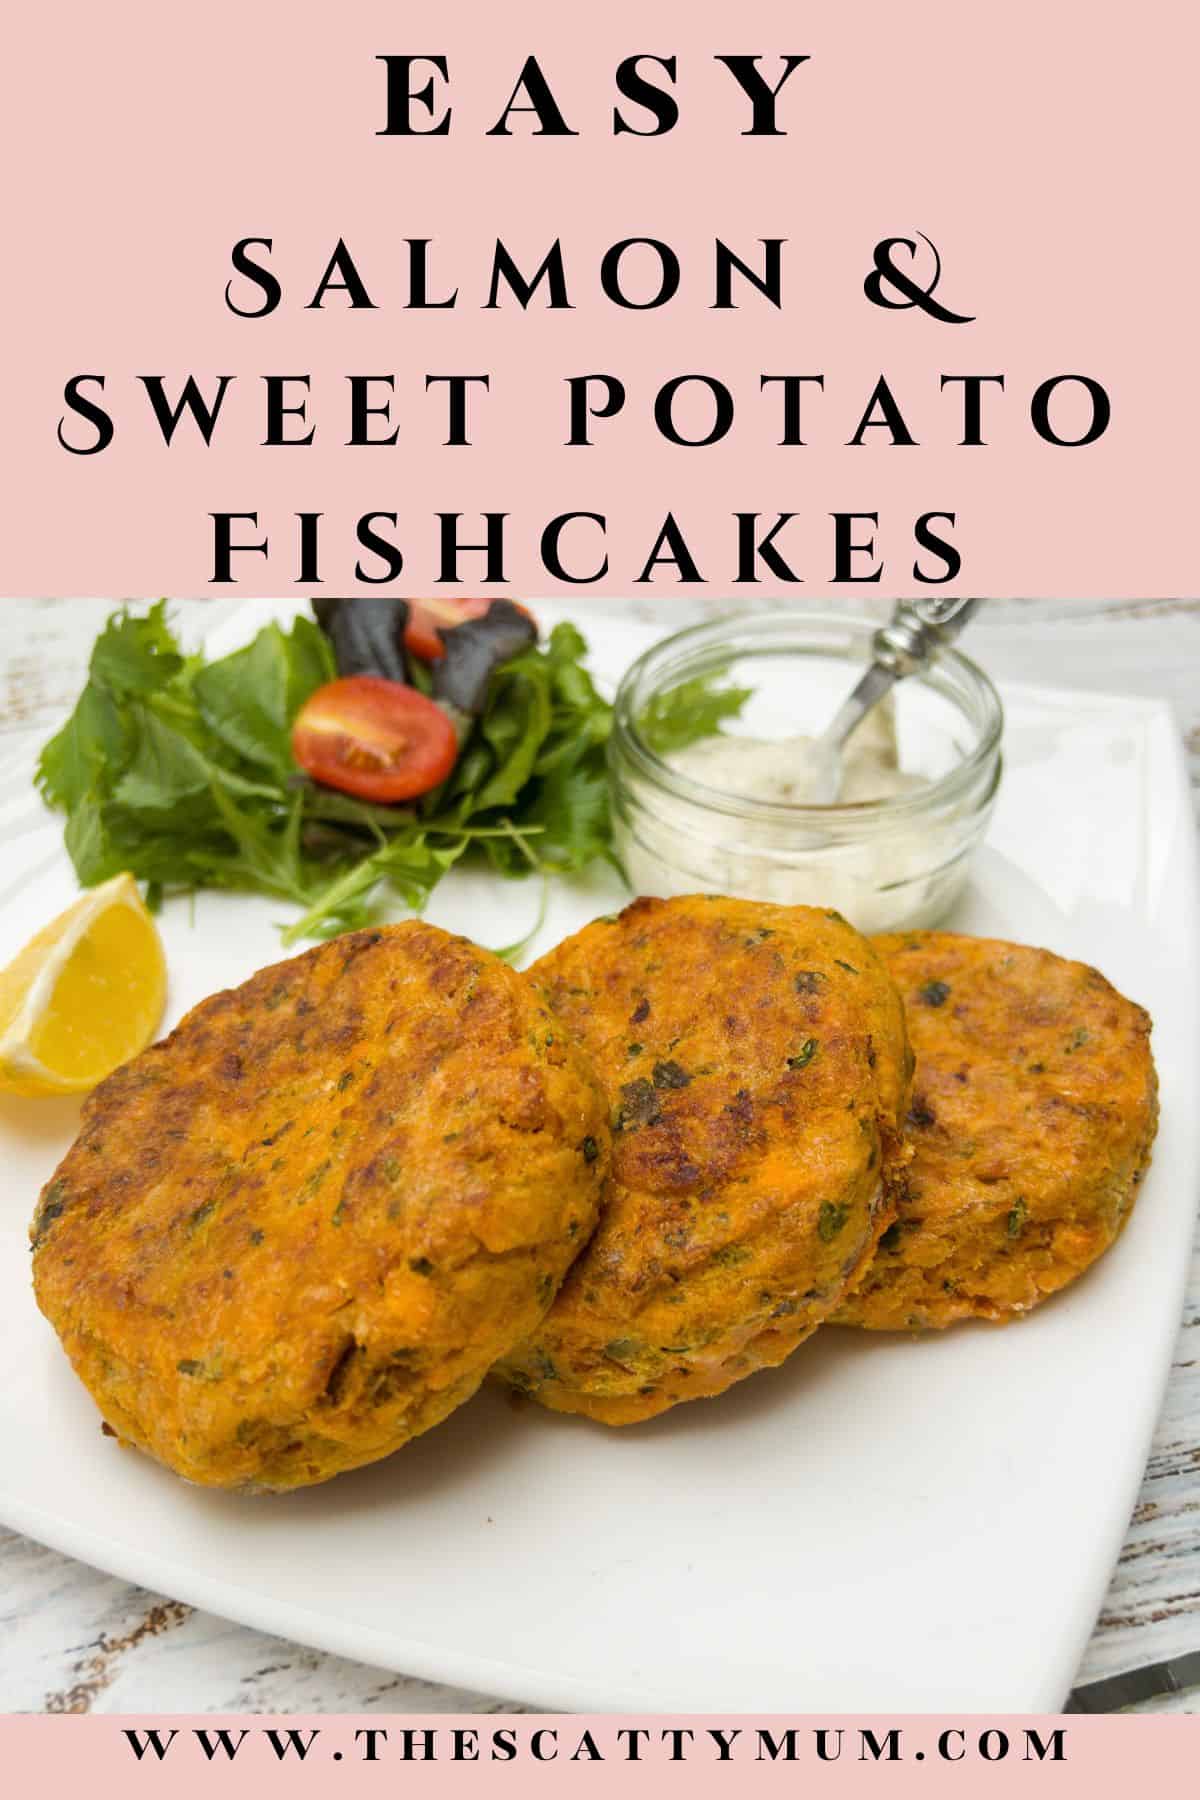 ponterest image for salmon and sweet potato fishcakes.